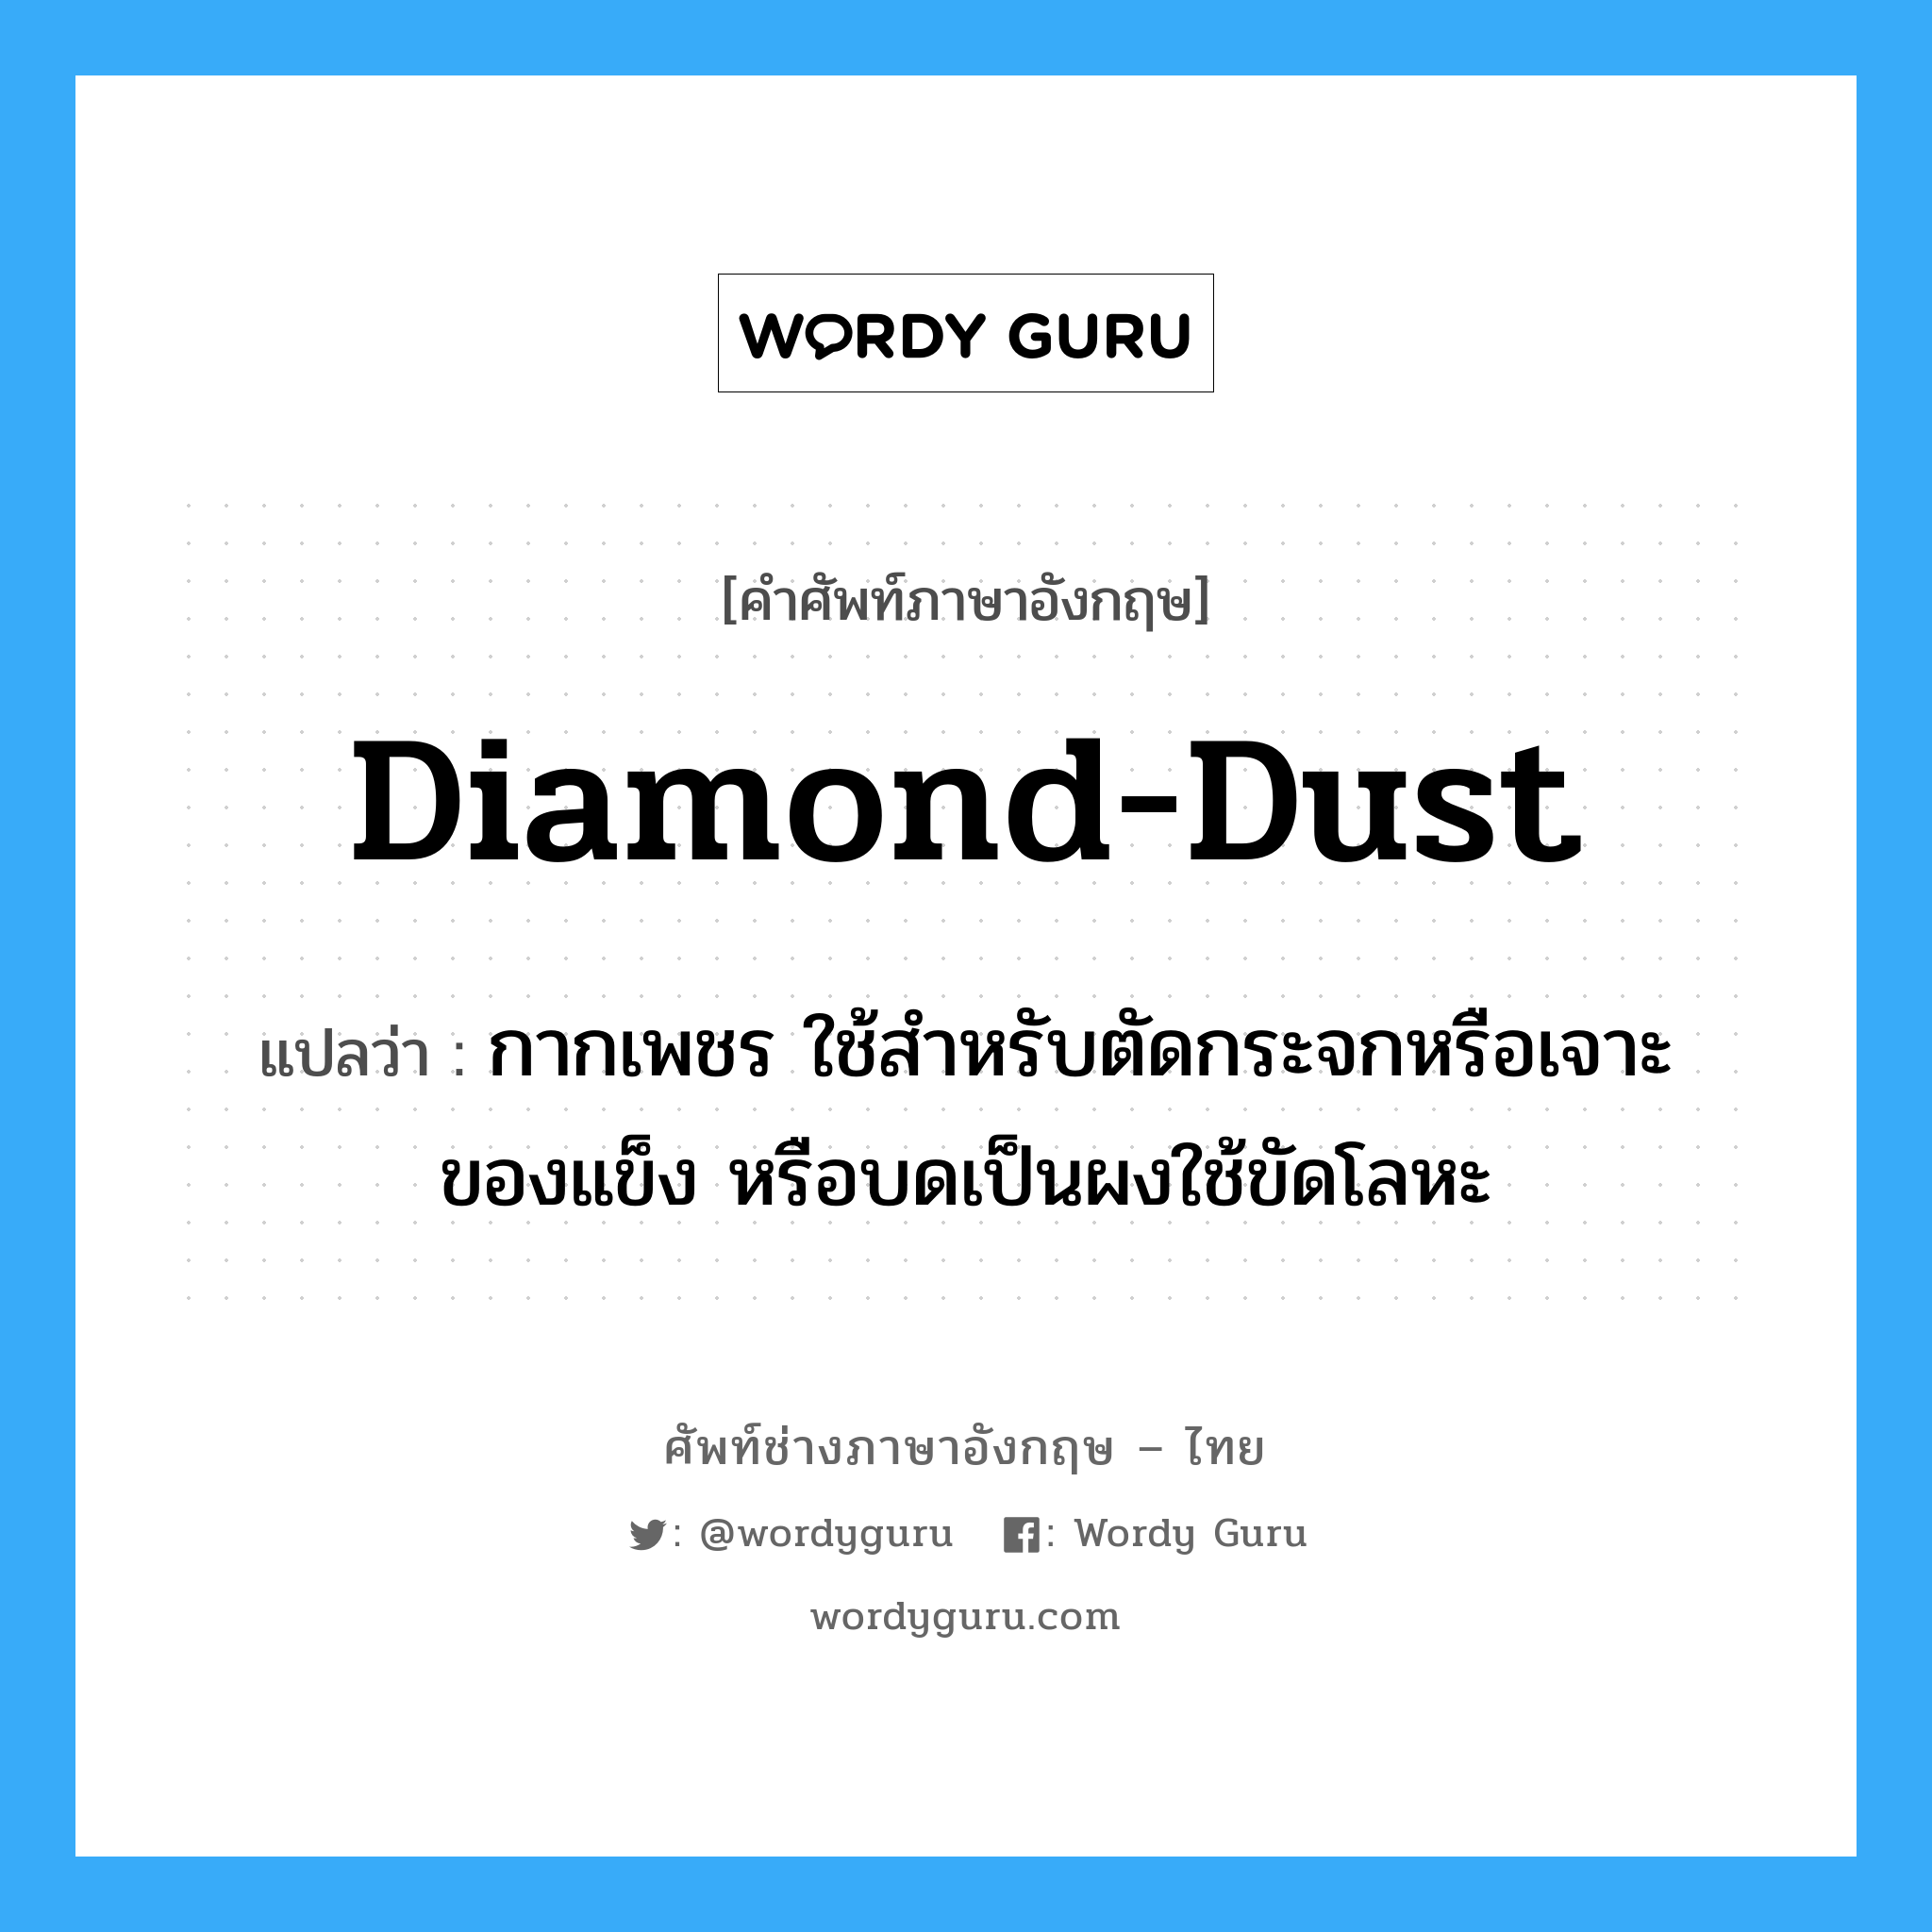 diamond dust แปลว่า?, คำศัพท์ช่างภาษาอังกฤษ - ไทย diamond-dust คำศัพท์ภาษาอังกฤษ diamond-dust แปลว่า กากเพชร ใช้สำหรับตัดกระจกหรือเจาะของแข็ง หรือบดเป็นผงใช้ขัดโลหะ